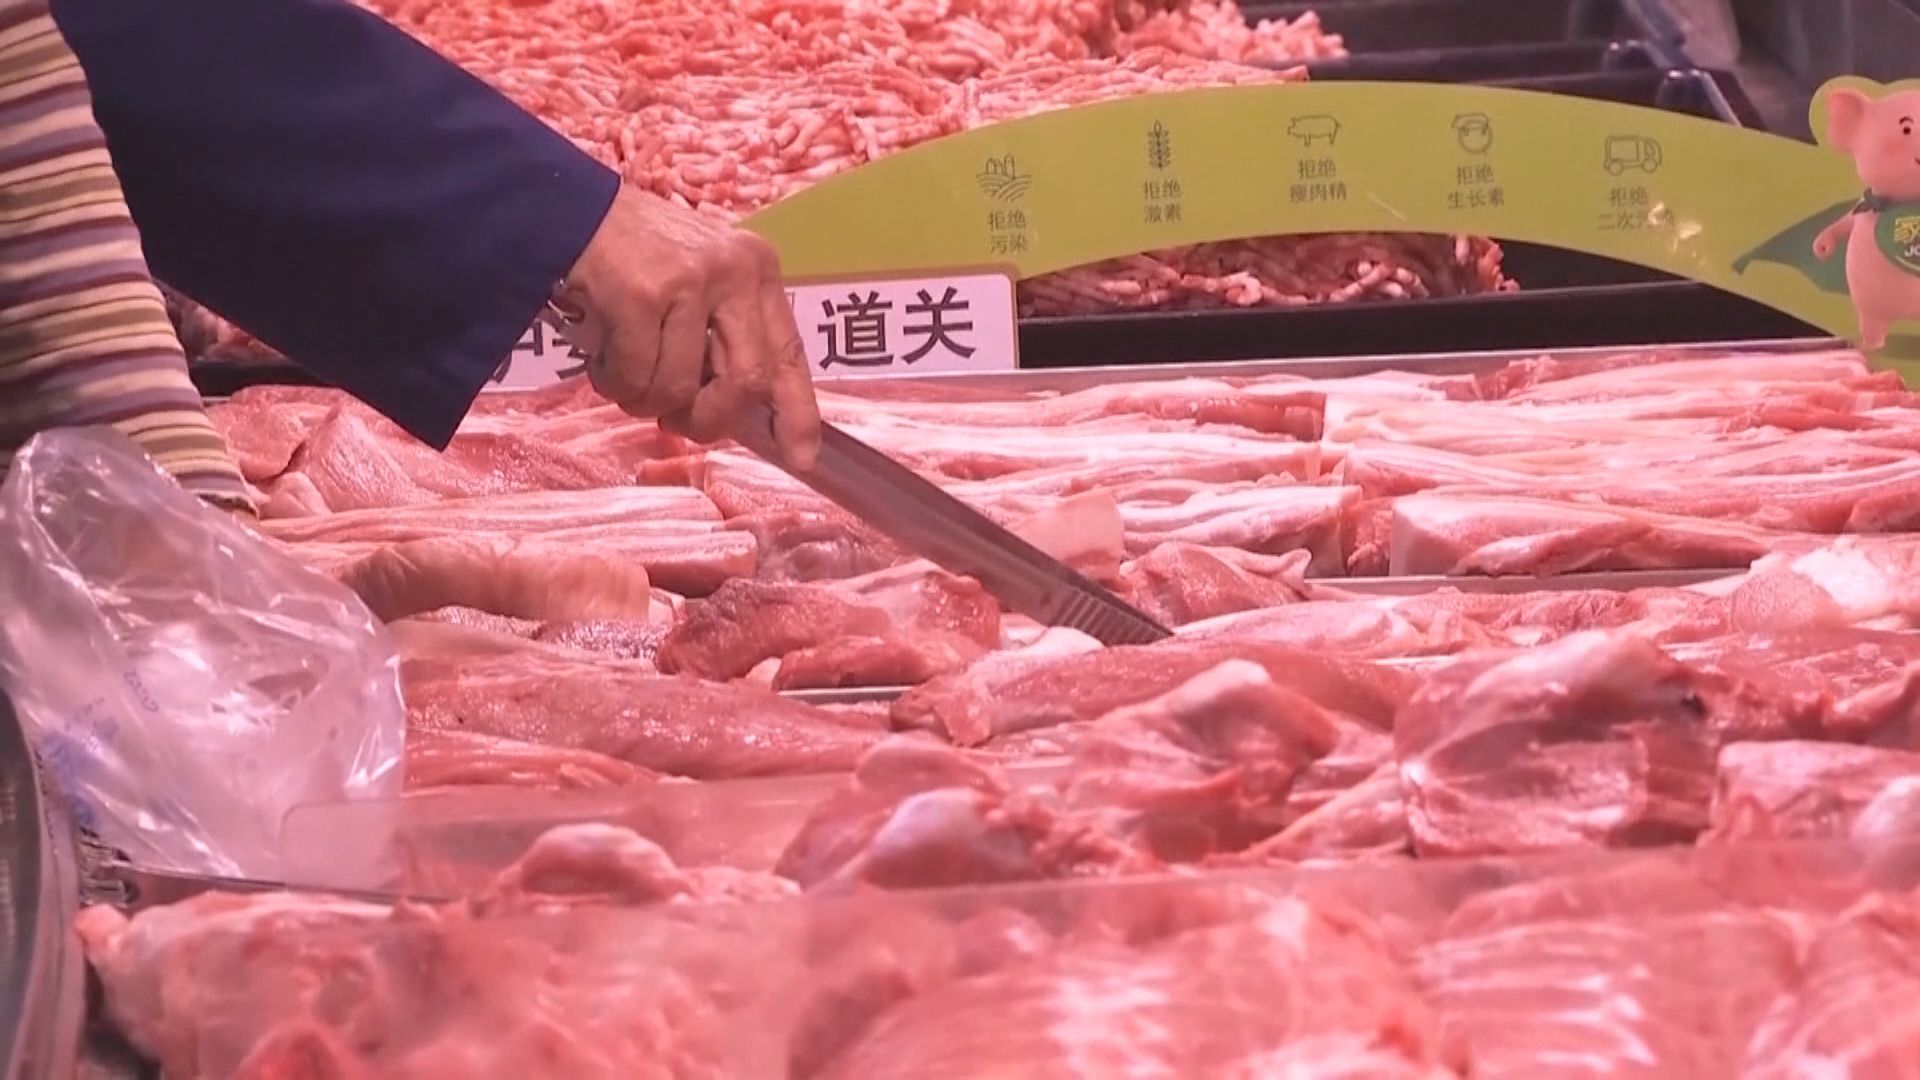 【物價高企】豬肉價一年升近70% 推高內地通脹至近六年高